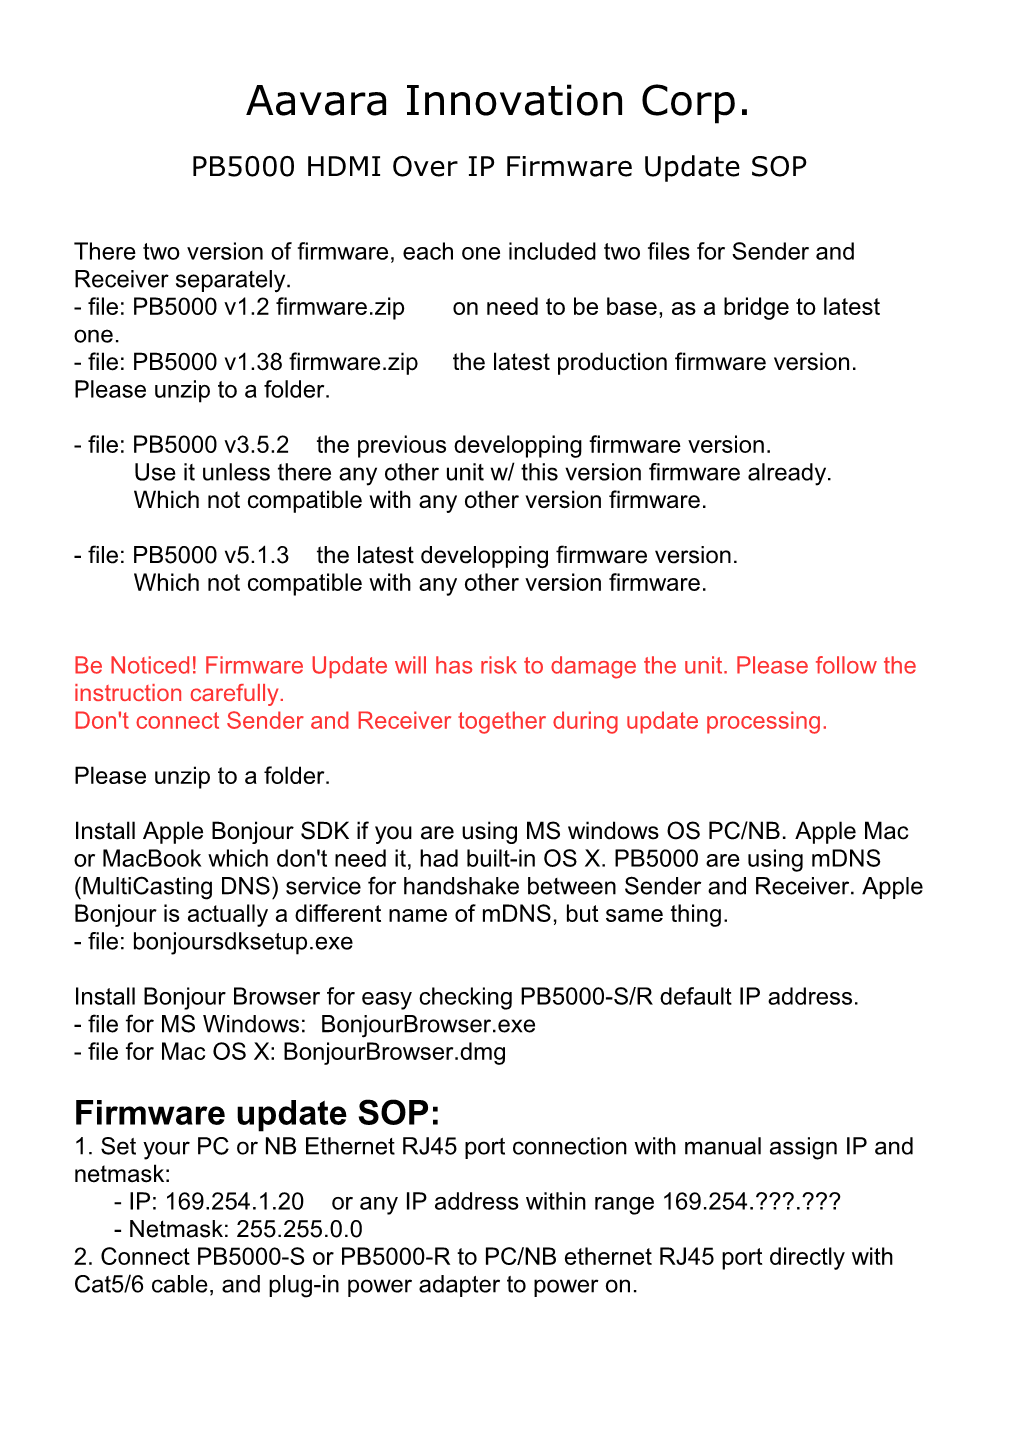 PB5000 HDMI Over IP Firmware Update SOP